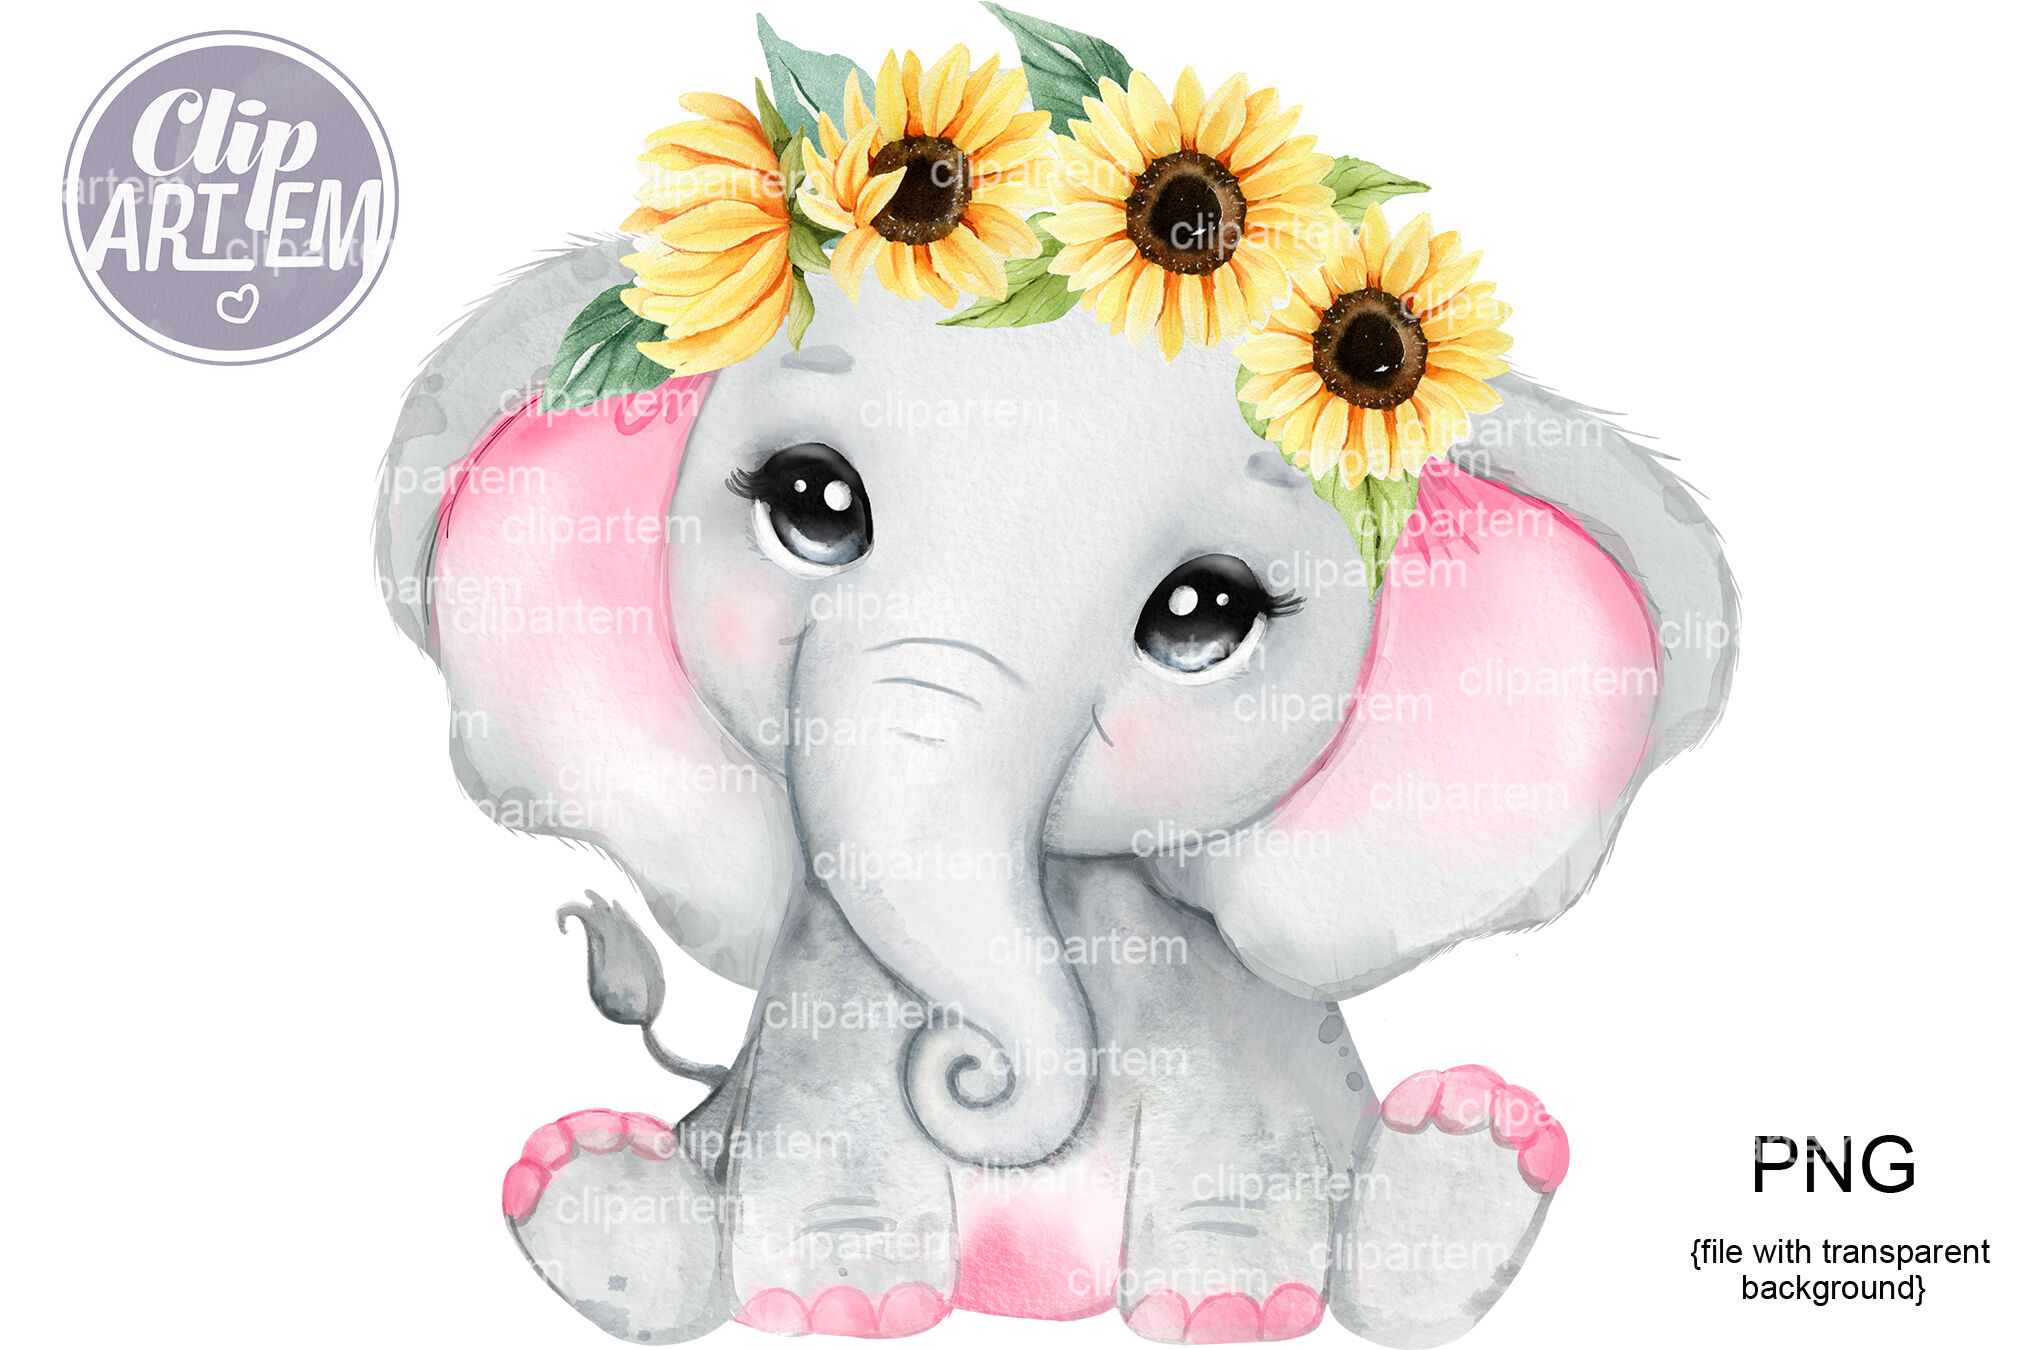 Con voi nước màu hồng và vương miện hoa hướng dương quả là một diện mạo lạ thường. Với bức hình này, bạn được đắm chìm trong cảm giác vui tươi và vô tư giống như khi một đứa trẻ nhặt được nhiều bông hoa hướng dương.